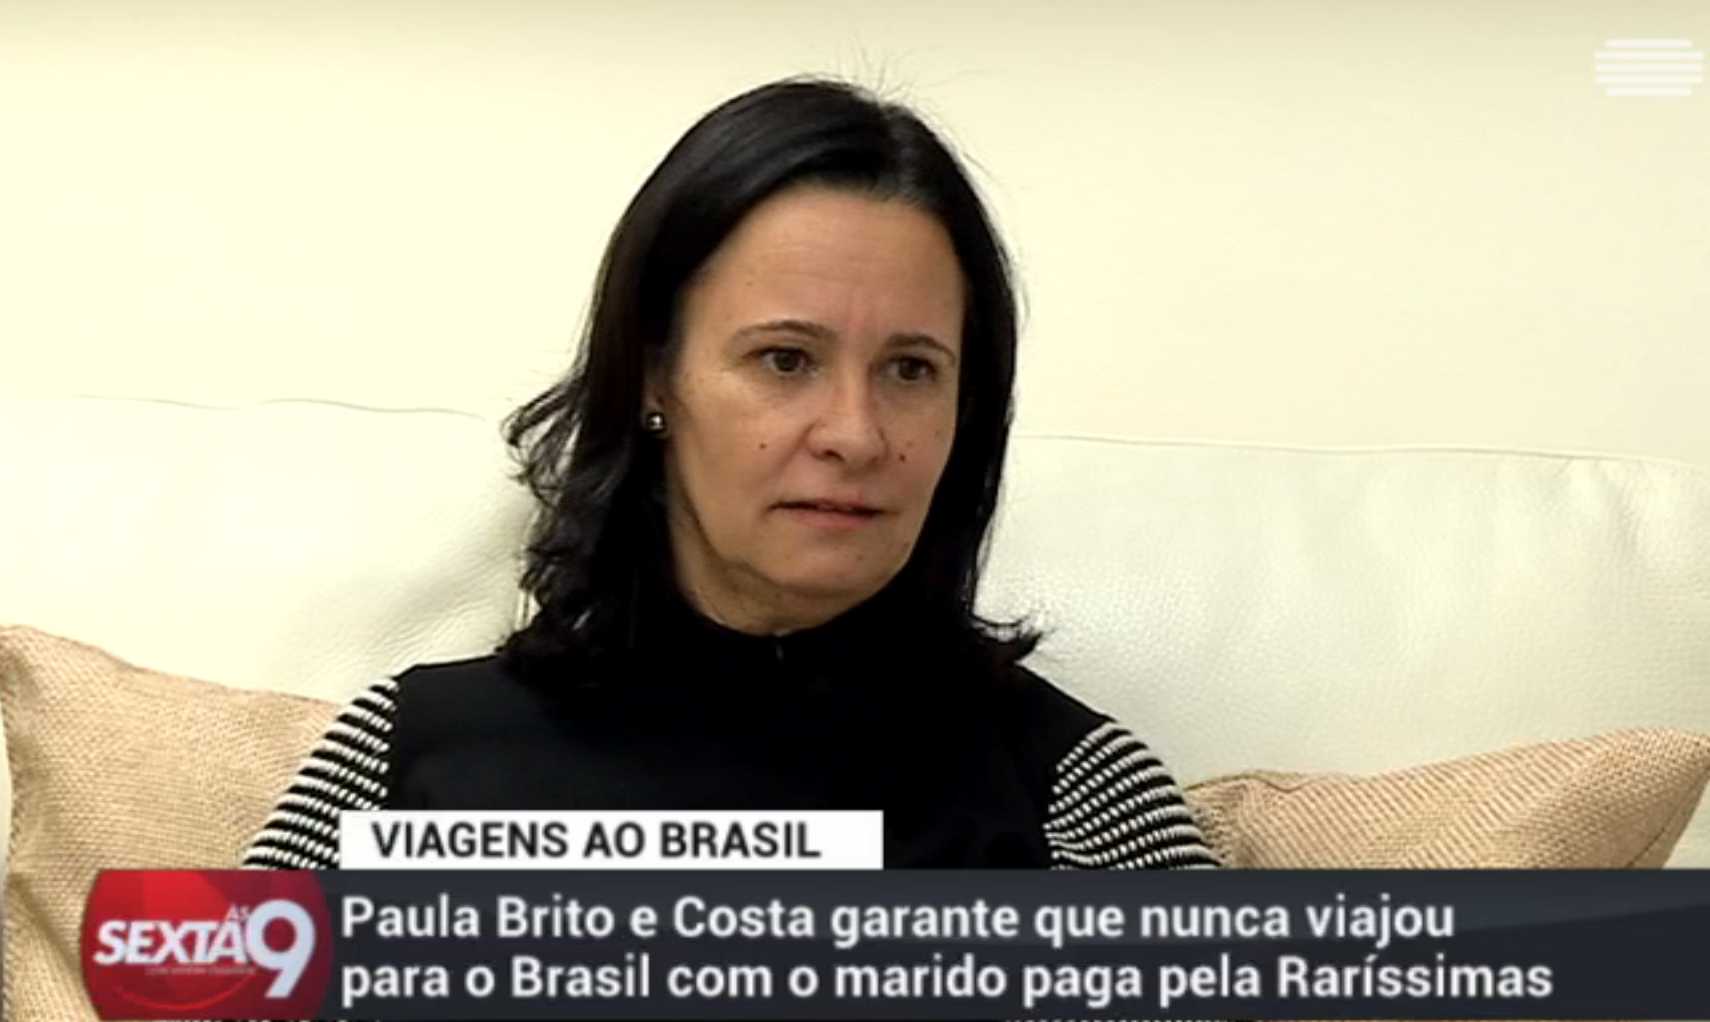 Paula Brito e Costa diz que é &#8220;alérgica a gambas&#8221; e que merece um &#8220;pedido de desculpas dos portugueses&#8221;